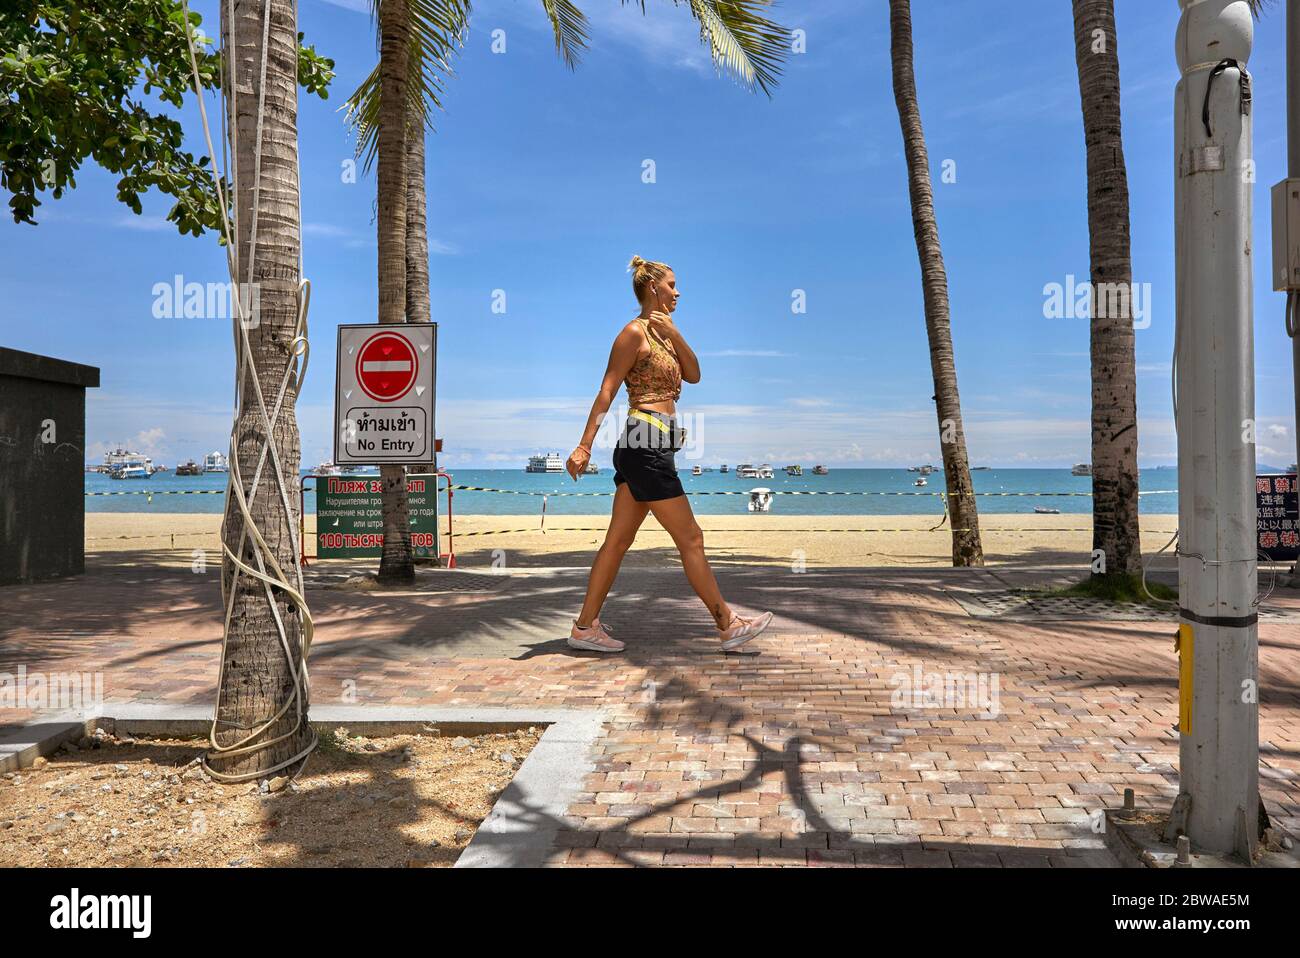 Exercice Covid-19. Femme marchant pour faire de l'exercice contre une plage verrouillée pendant la pandémie du coronavirus 2020 Thaïlande Asie du Sud-est Banque D'Images